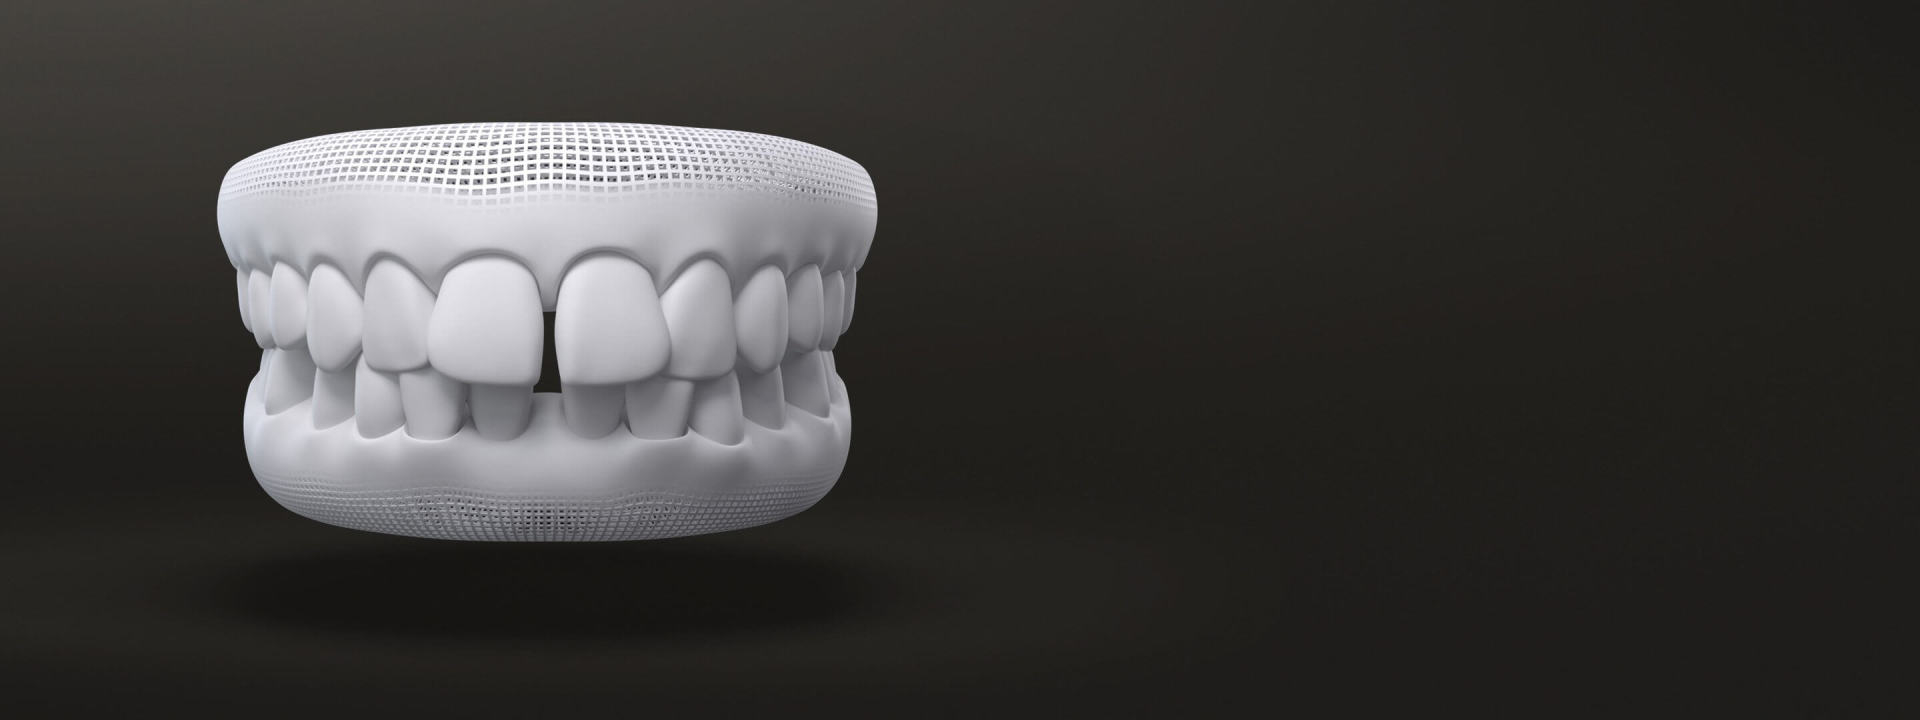 Spazi tra i denti modello 3D: prima degli allineatori dentali Invisalign - Italia